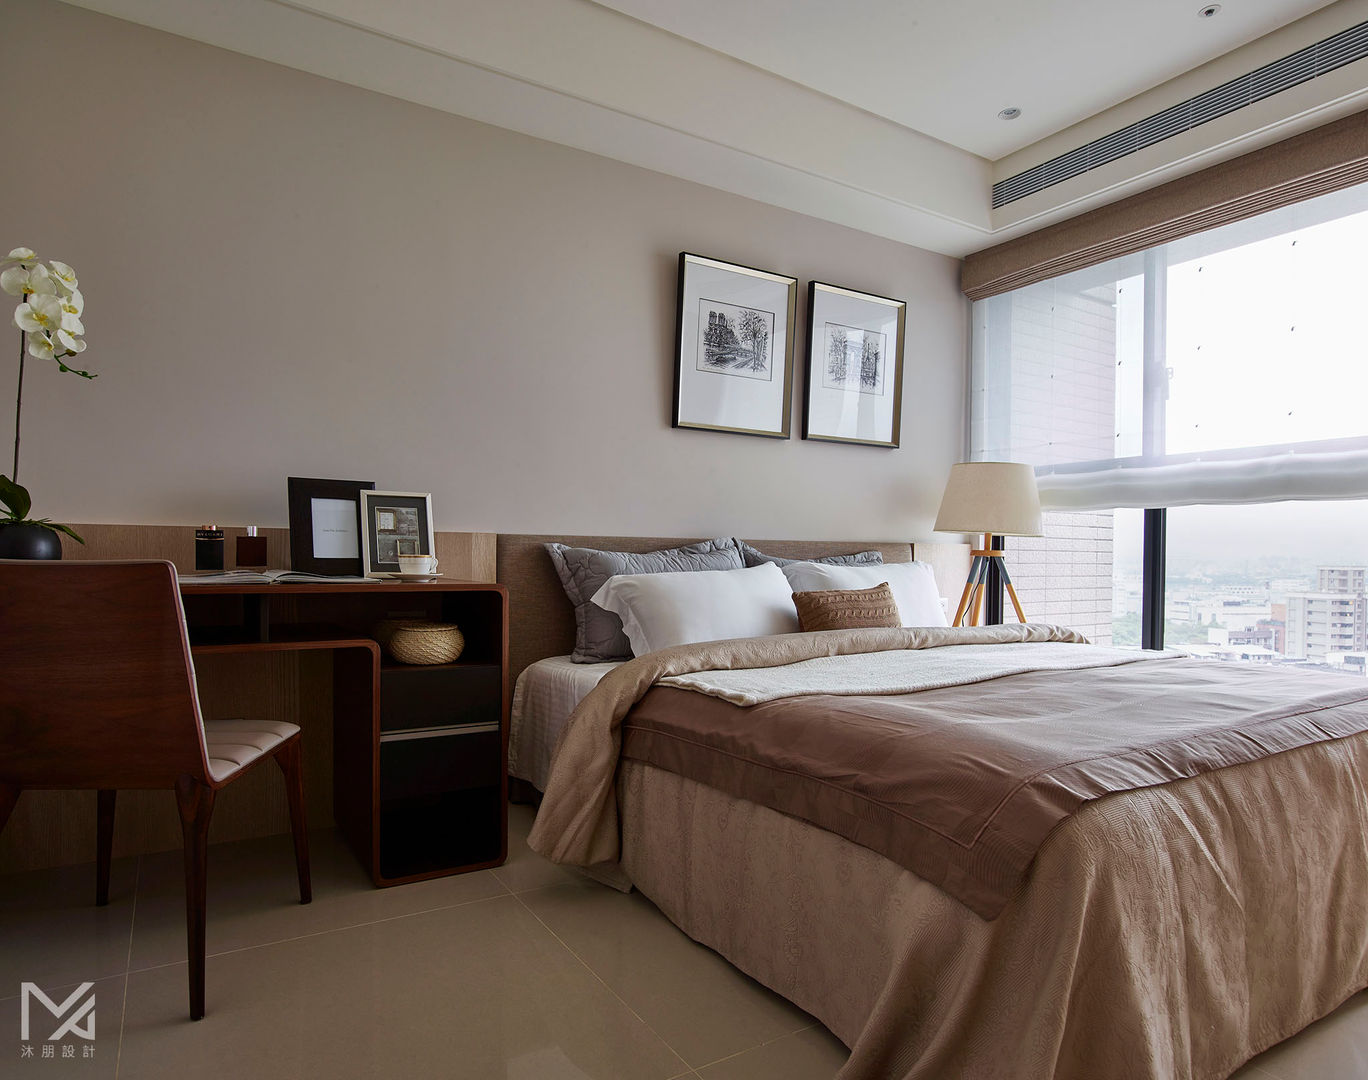 土城-董宅 沐朋設計 Modern style bedroom